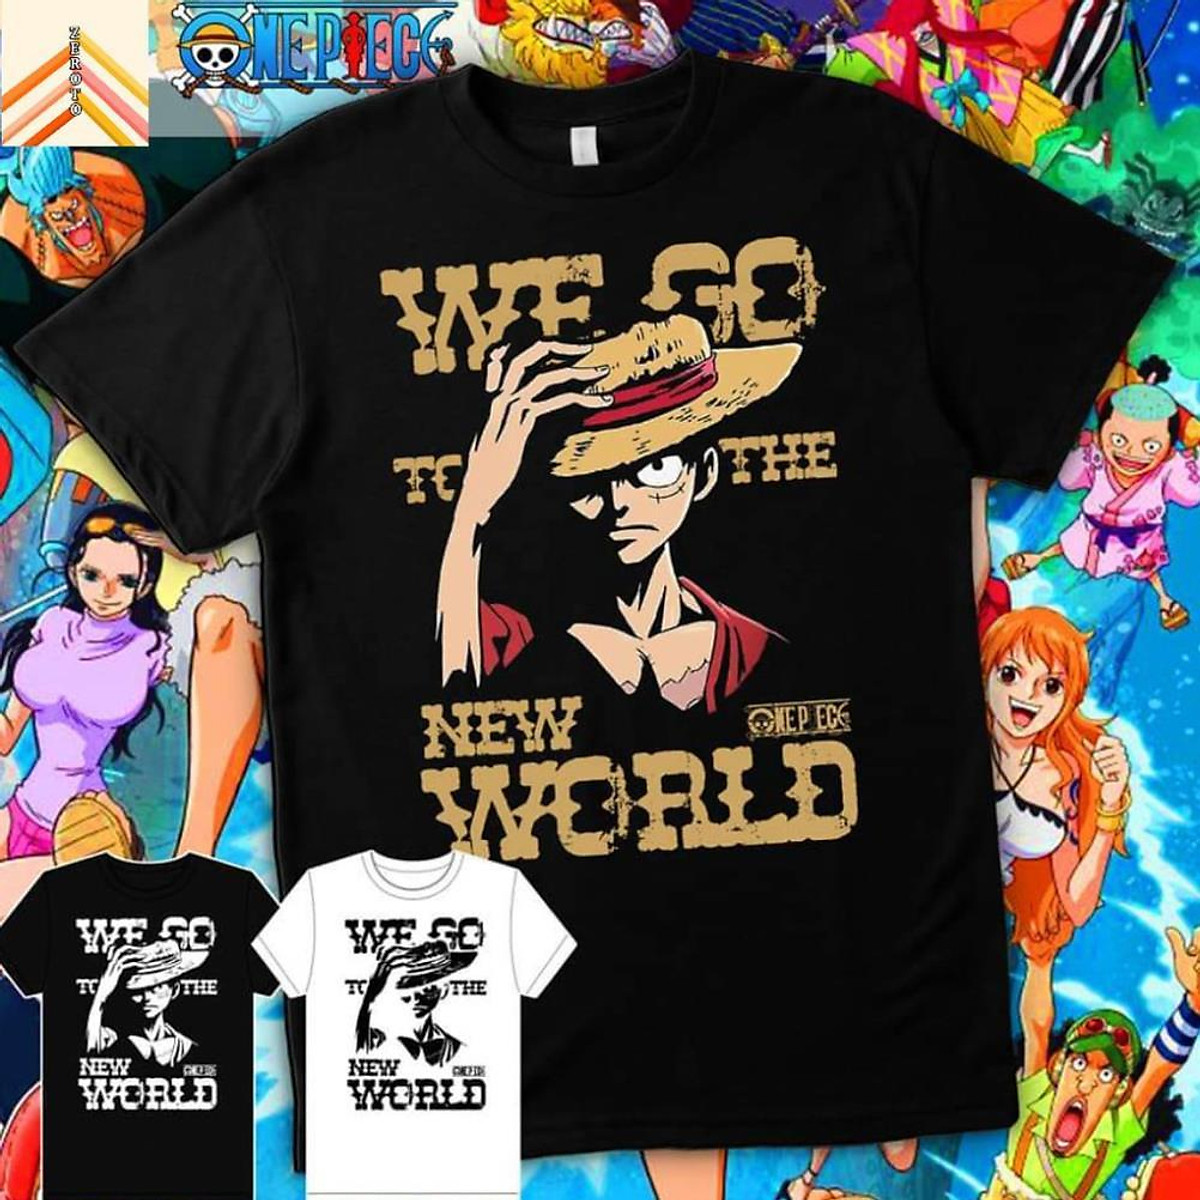 Áo phông Anime One Piece: Thật tuyệt vời khi bạn có thể sở hữu một chiếc áo phông Anime One Piece tràn đầy năng lượng và sức sống. Những hình ảnh sặc sỡ và đầy tính biểu tượng của nhóm Luffy sẽ giúp bạn để tôn lên cá tính của mình. Đồng thời, những chiếc áo phông này còn là cách hiệu quả để giao lưu và gắn kết giữa các fan quan tâm đến One Piece như bạn.